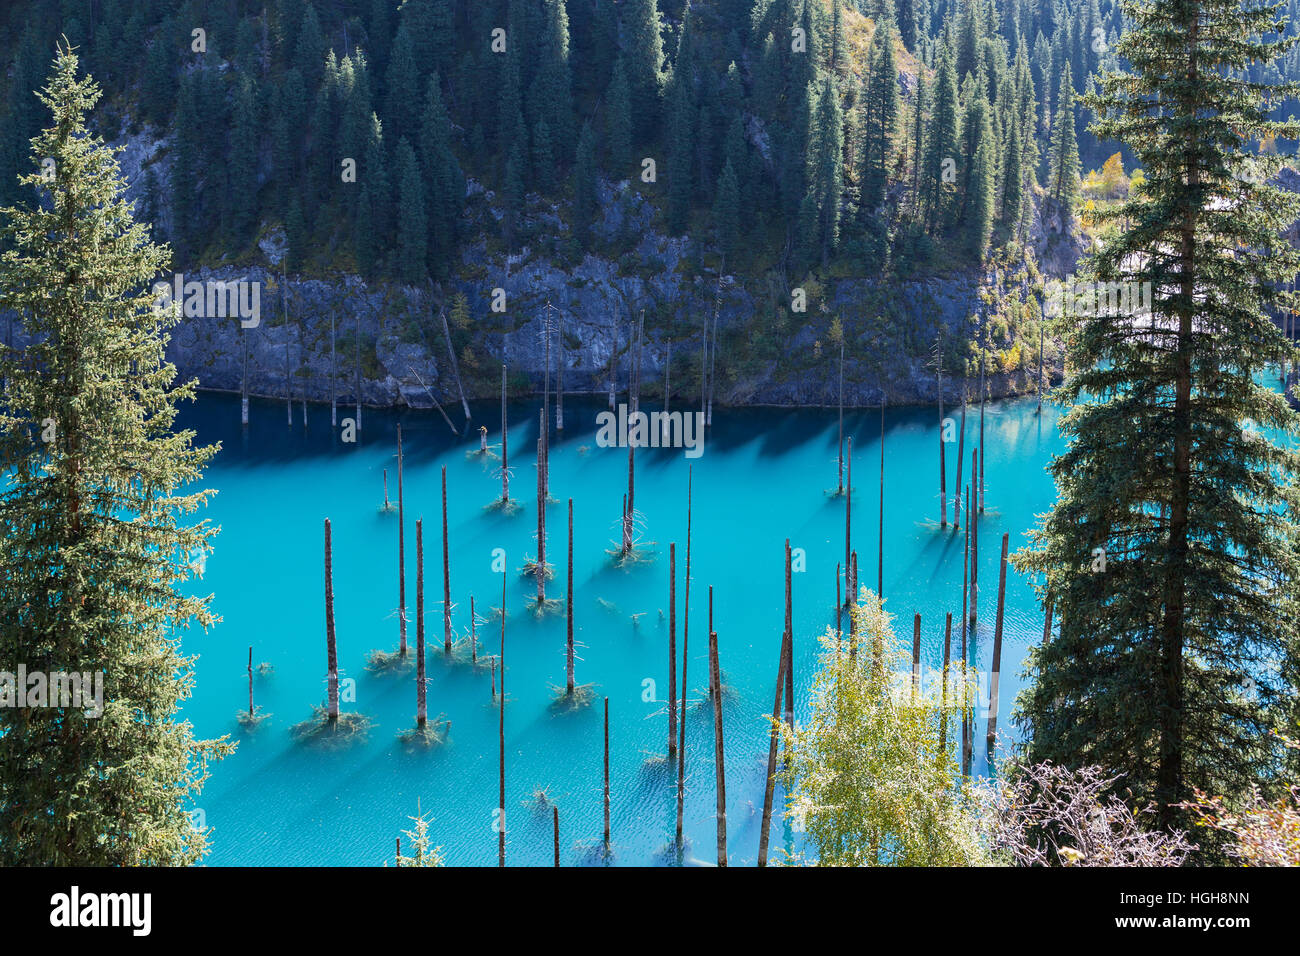 Lac Kaindy au Kazakhstan connu aussi sous le nom de lac Birch Tree ou dans l'eau de la forêt. Banque D'Images